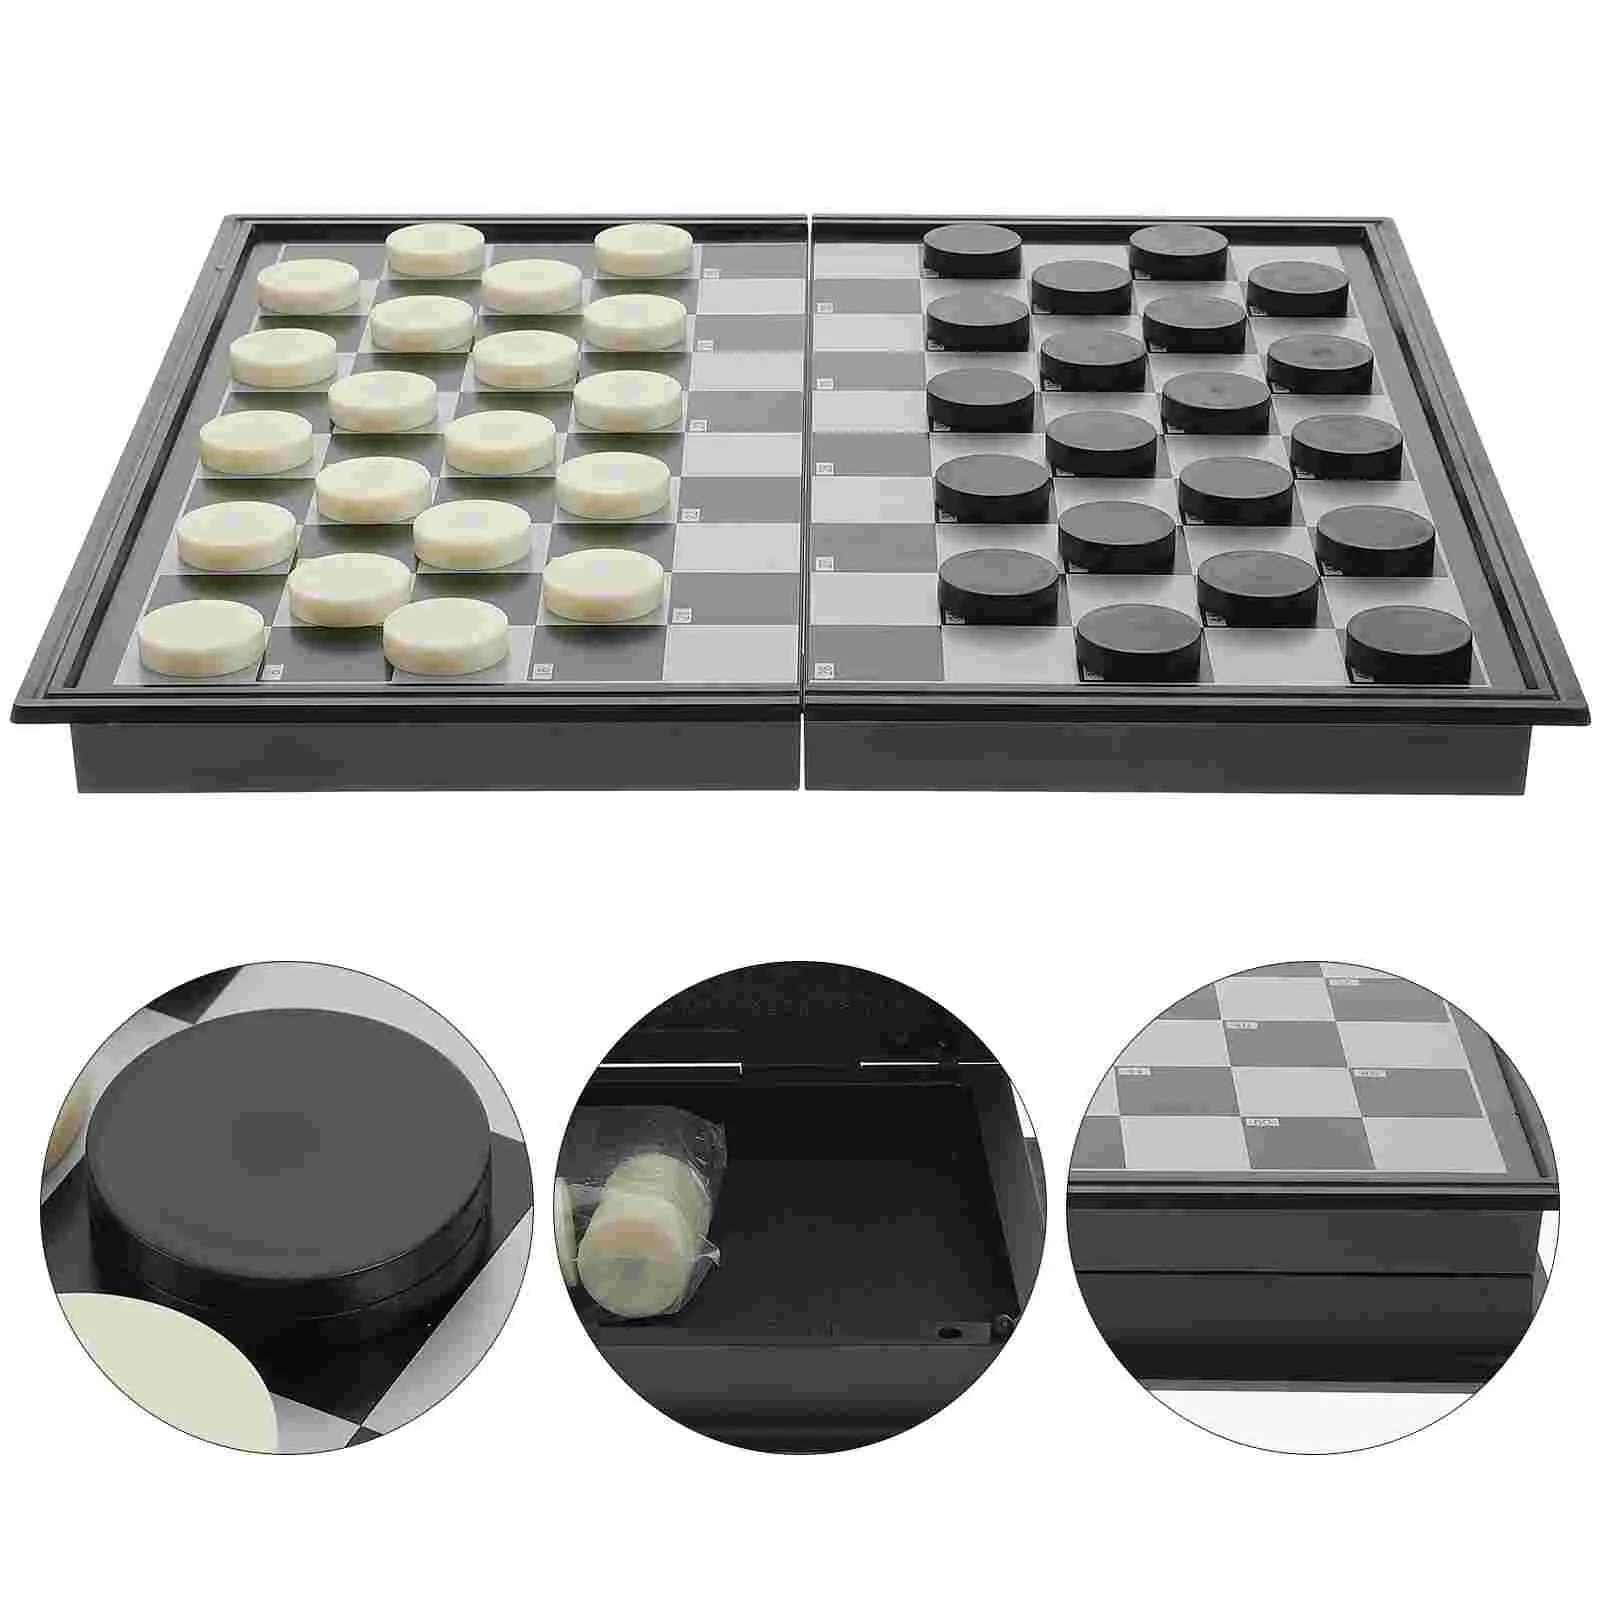 

Шашки Складная Шахматная настольная игра для отдыха портативная пластиковая магнитная настольная игрушка для путешествий в помещении